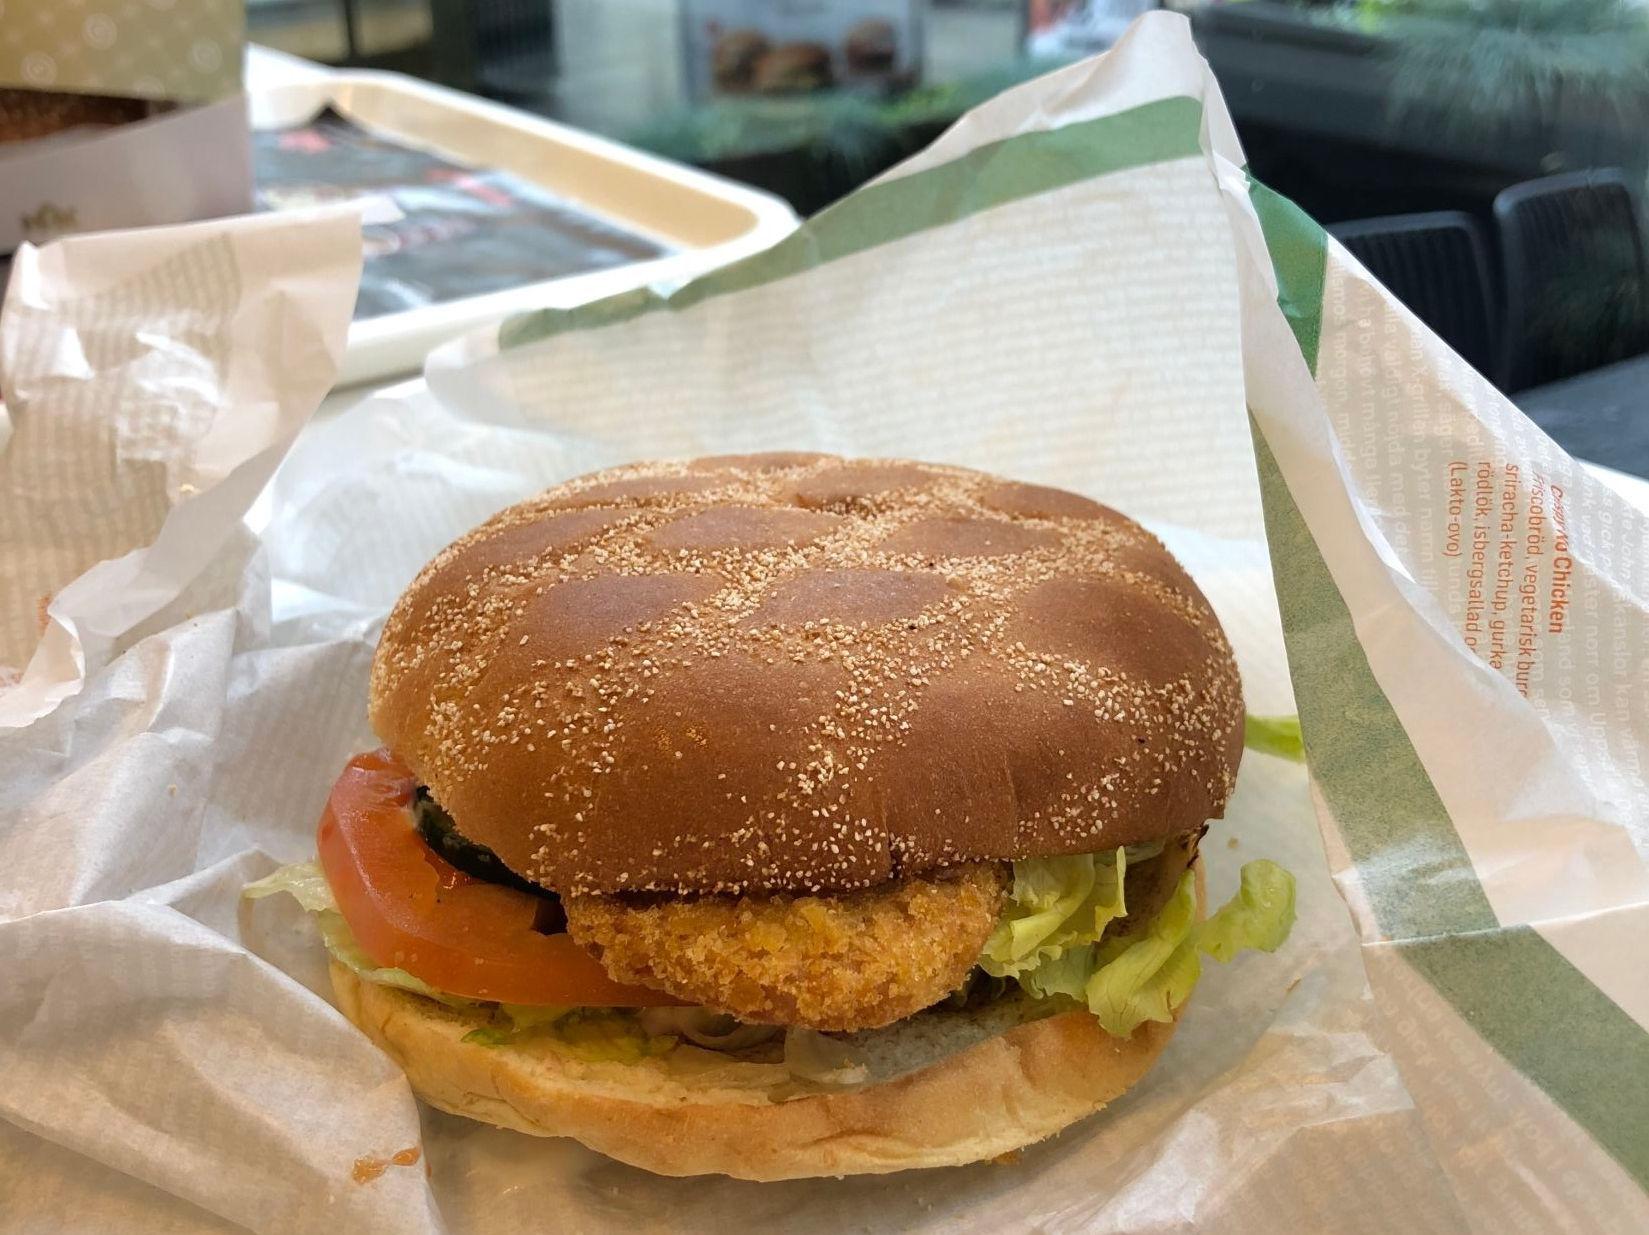 TESTVINNEREN: Crispy No Chicken kopierer smaken av en kyllingburger, og skal vi tro testpanelet treffer den godt. Foto: Mona Bristøl/VG